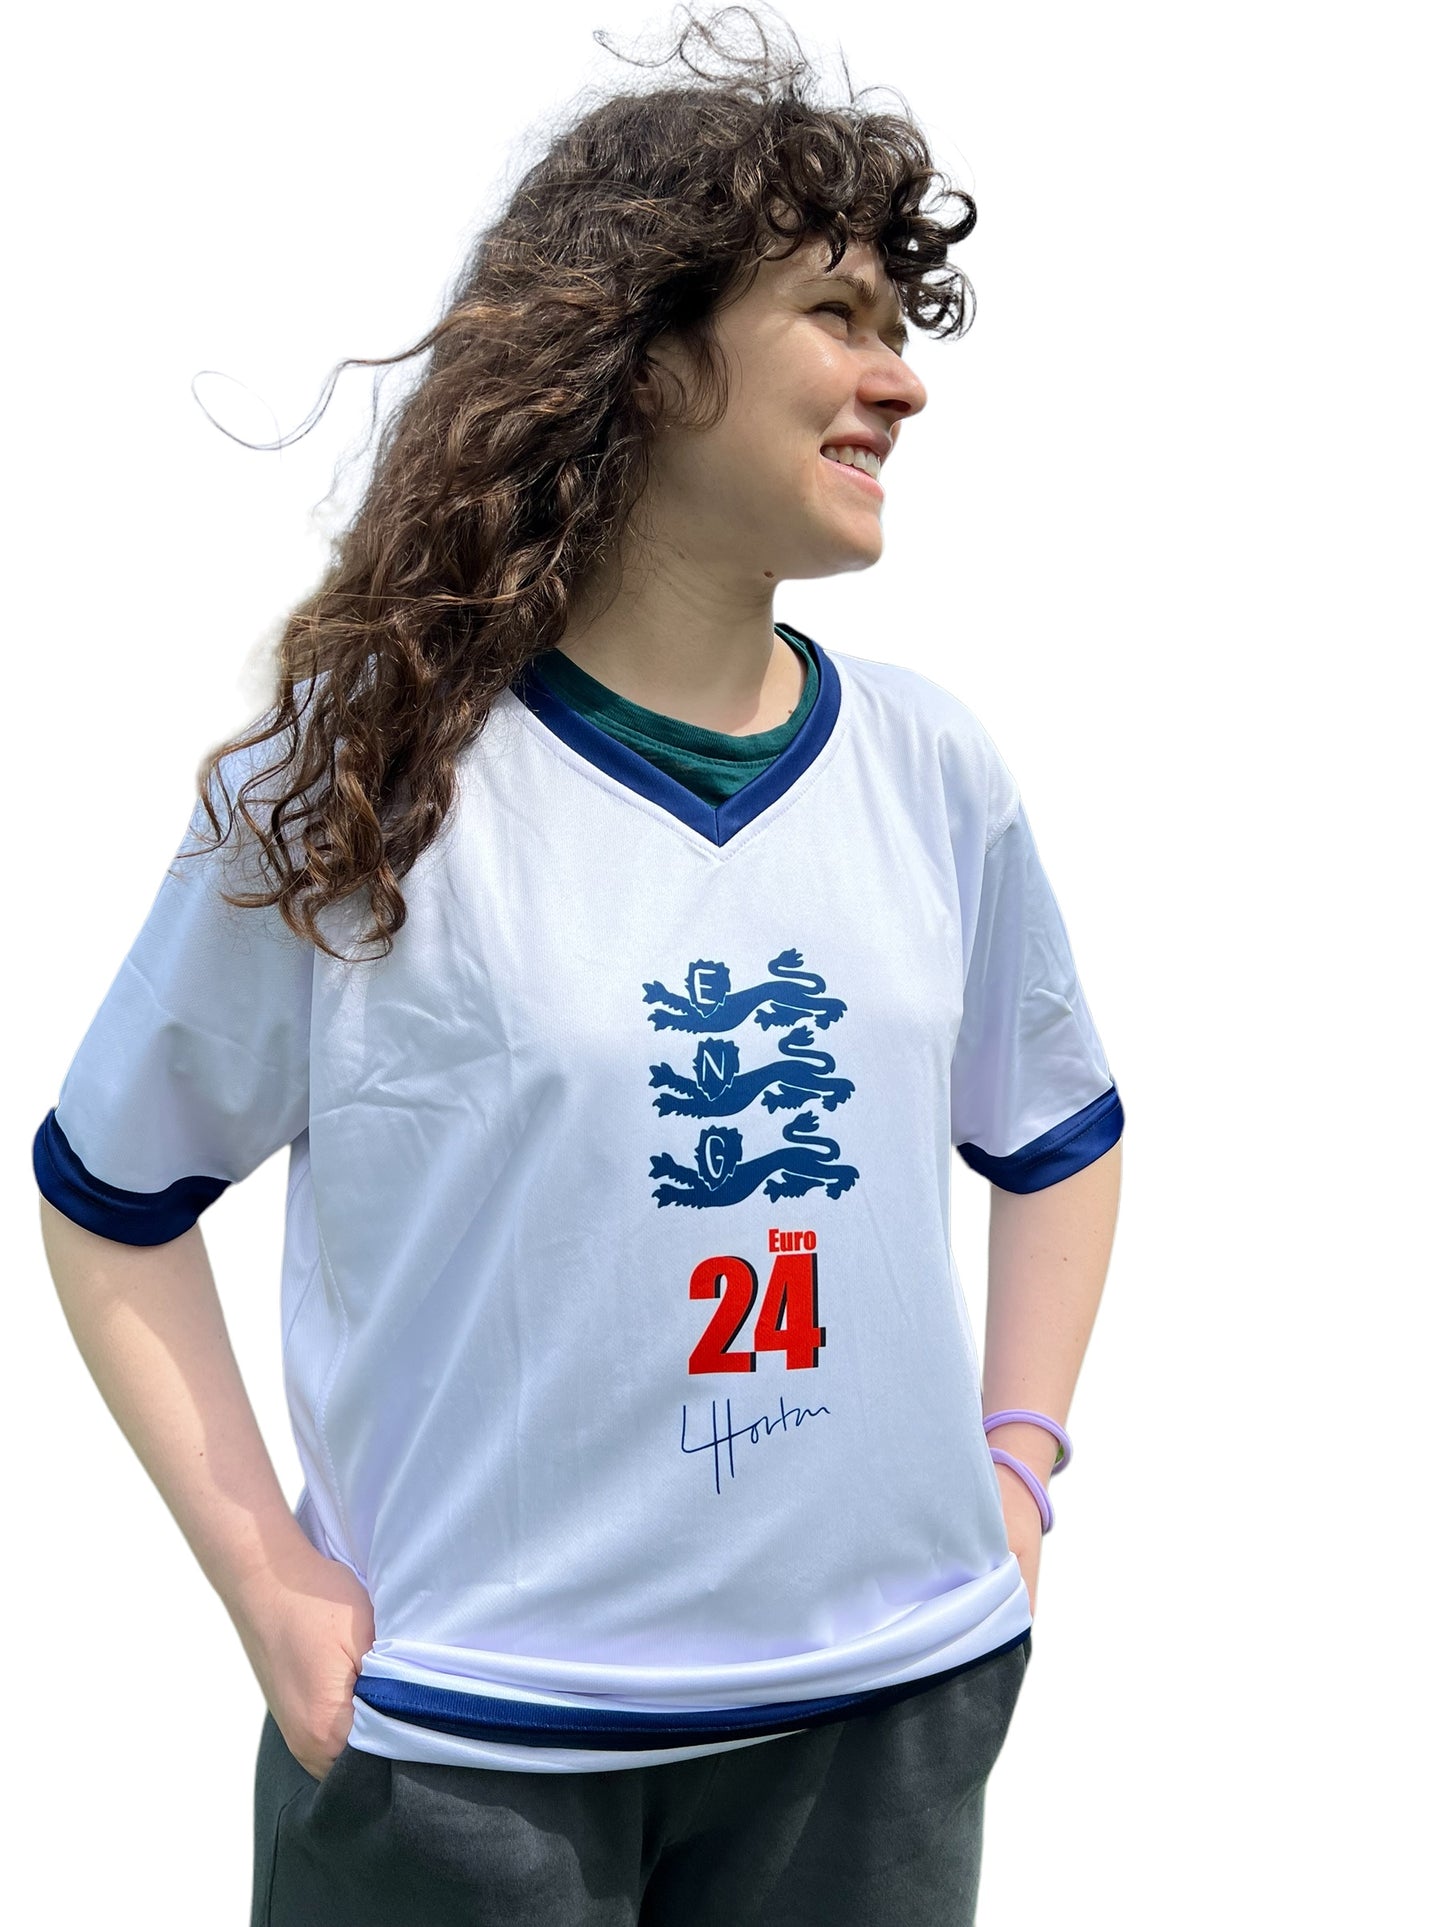 Euro 24 England Football Shirt - Luke Horton